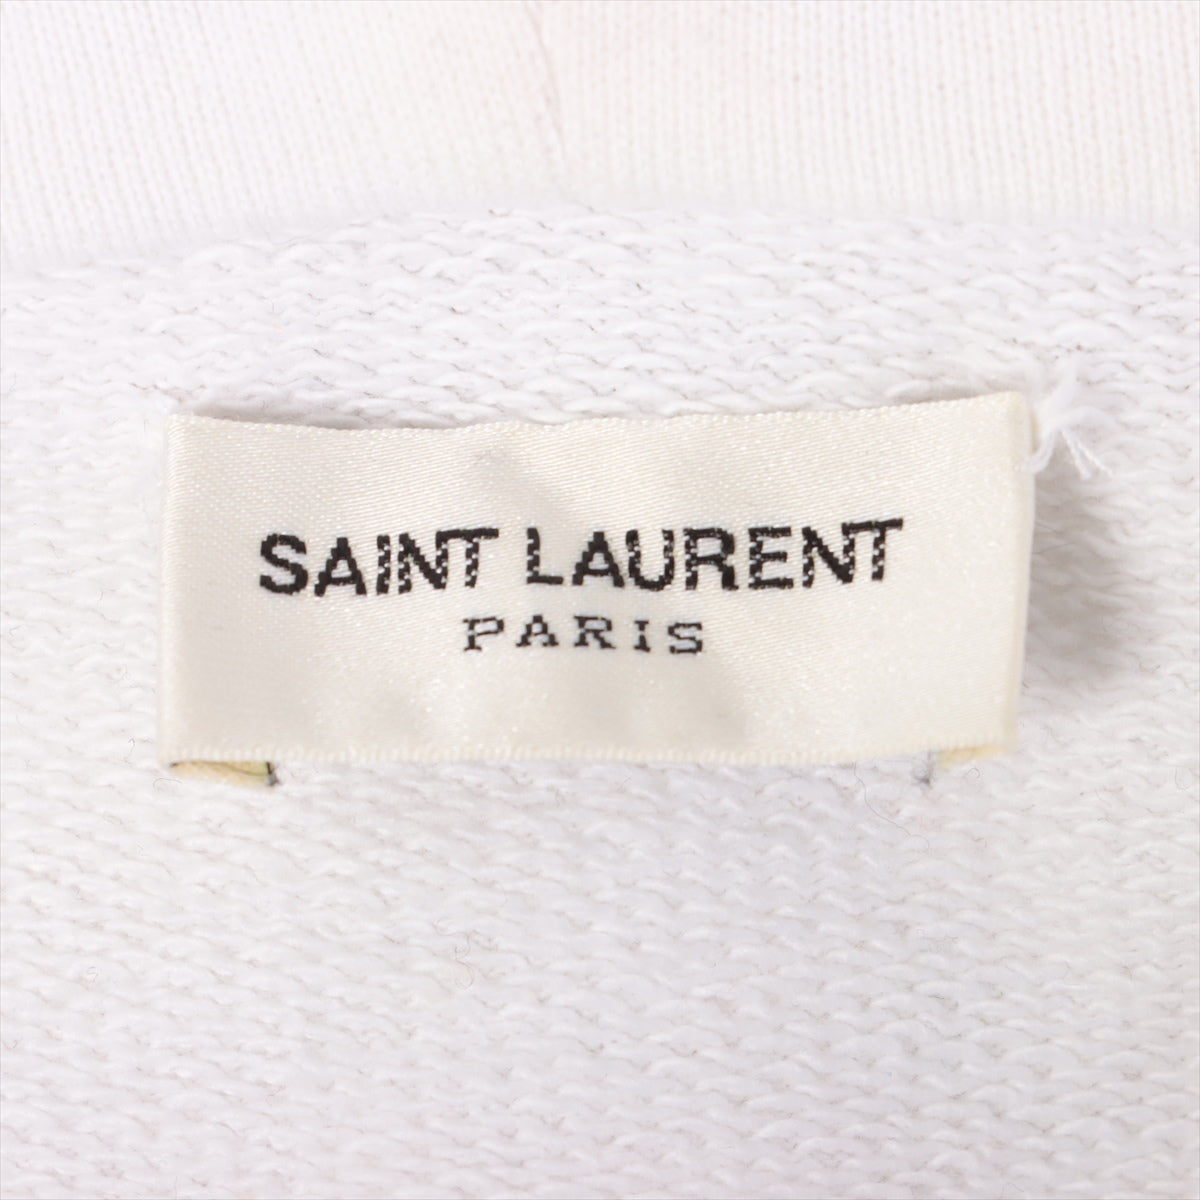 Saint Laurent Paris 20 years Cotton Parker M Men's White  464581